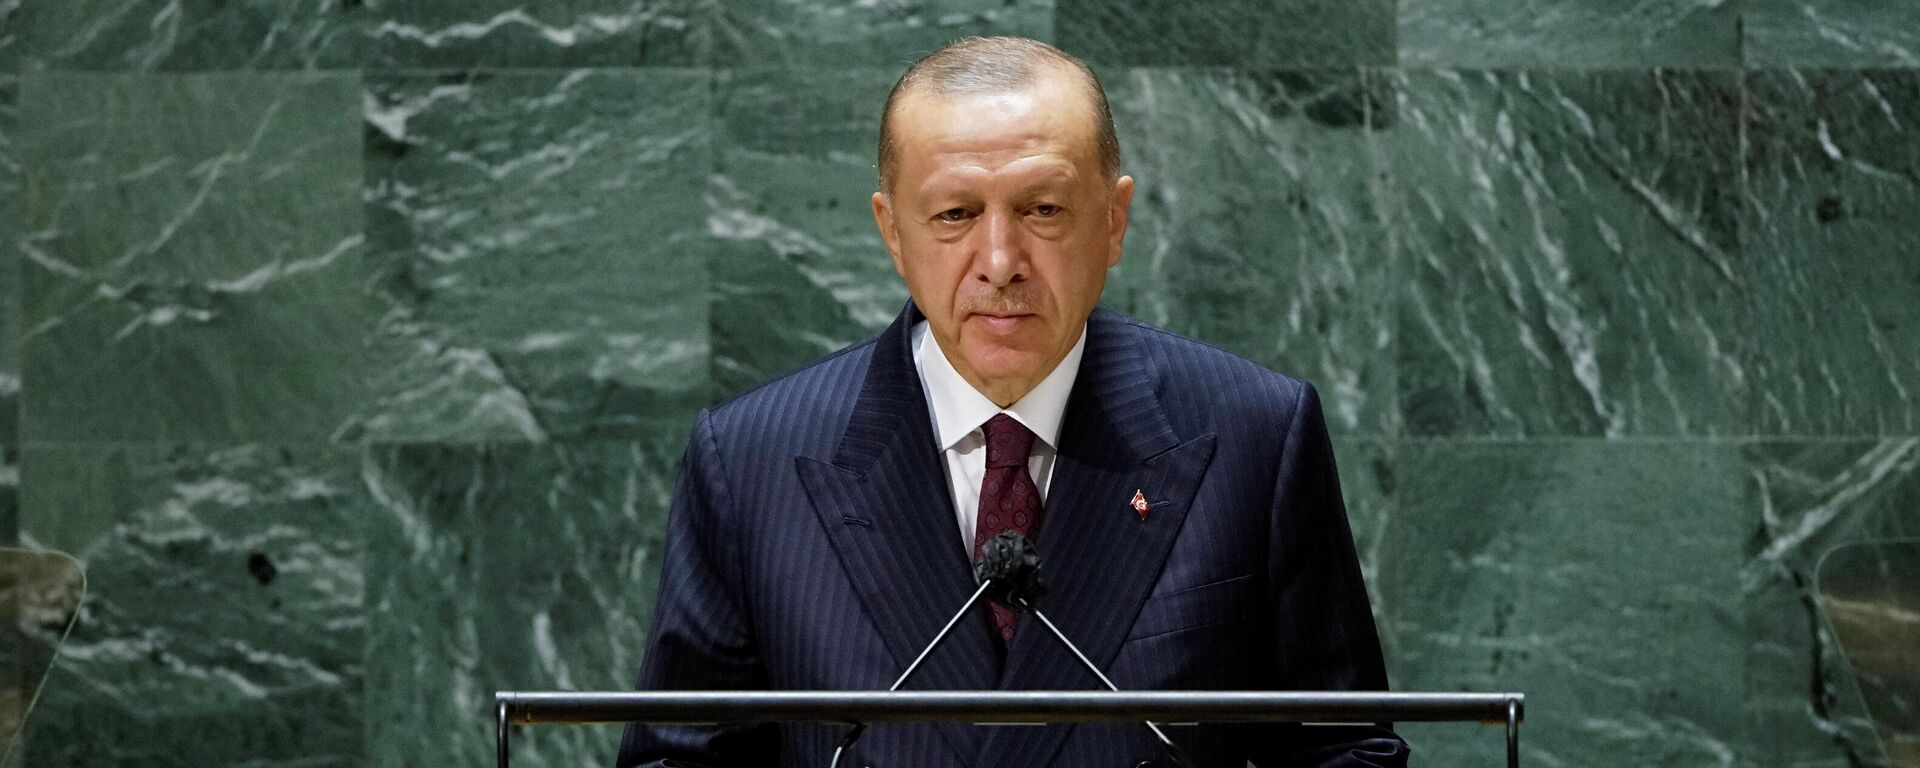 Президент Турции Реджеп Тайип Эрдоган во время выступления на Генеральной Ассамблее ООН - Sputnik Литва, 1920, 22.09.2021